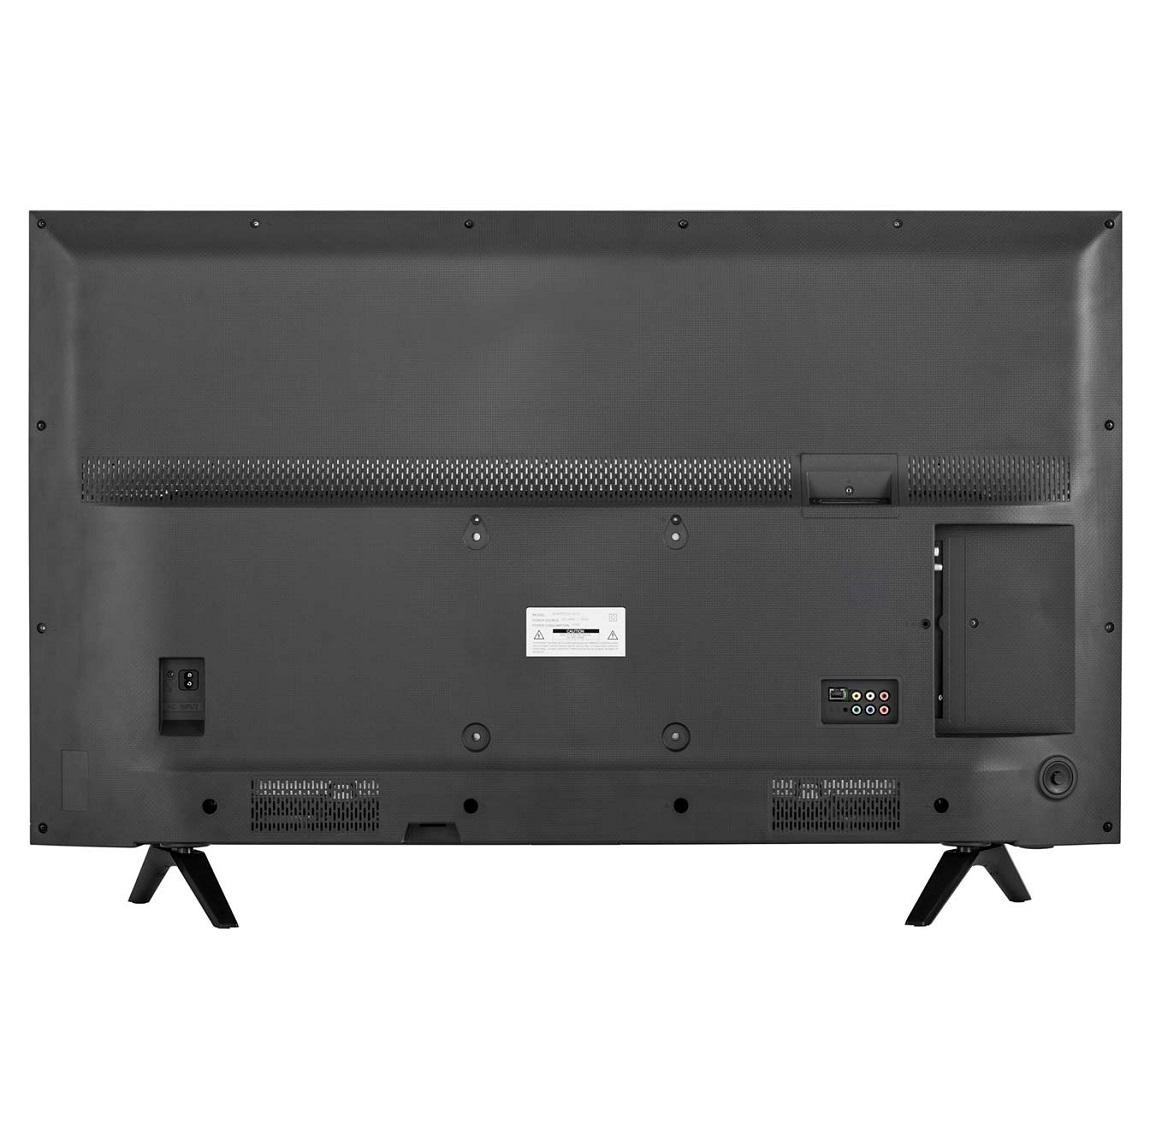 Hisense 55 Inch 4k Smart Tv User Manual